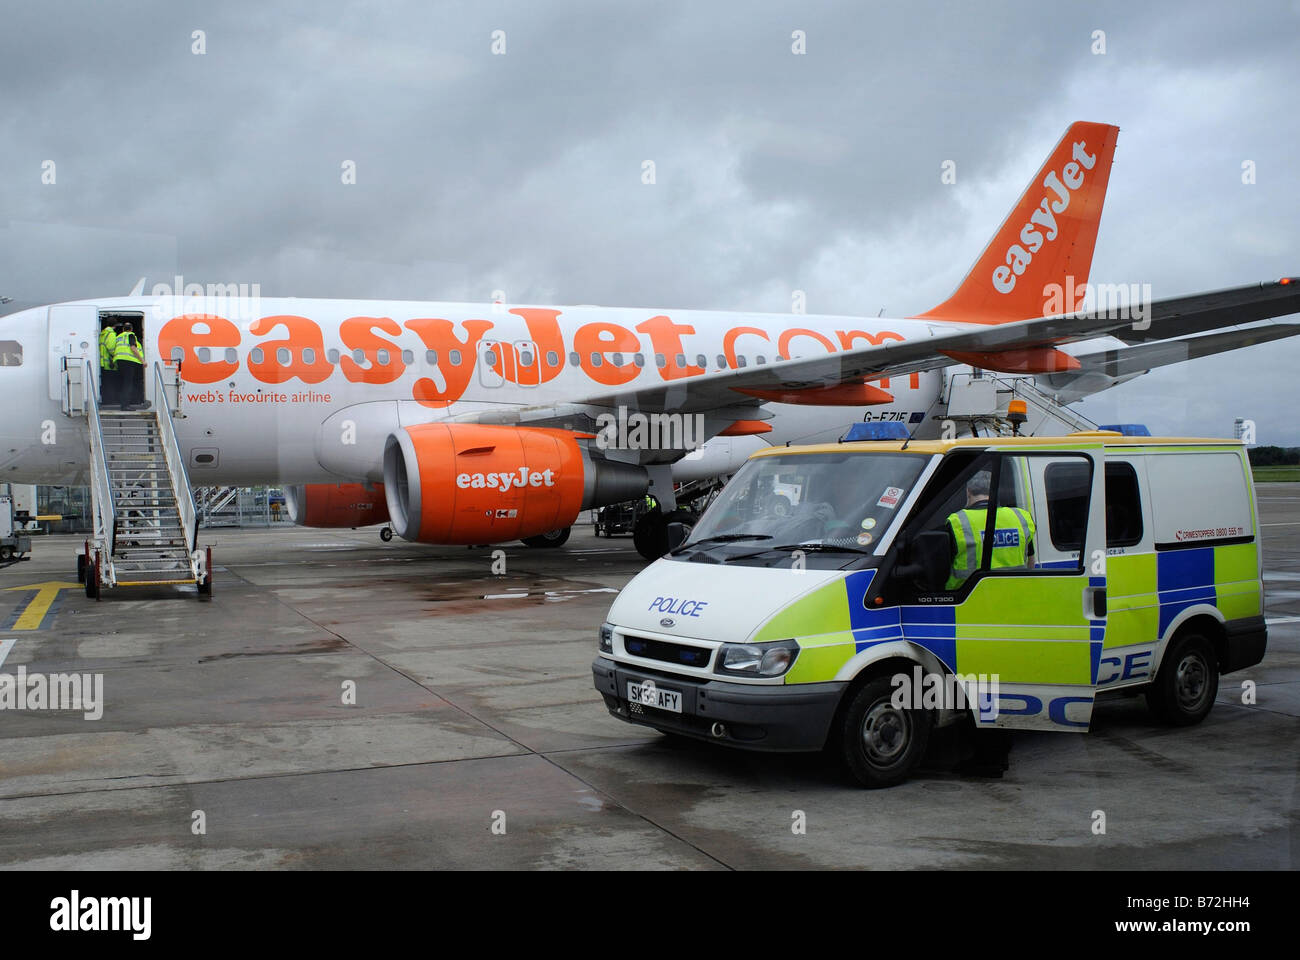 Easyjet aereo con la polizia van al di fuori che ha appena arrestato un passeggero per un comportamento irregolare Edinburgh Airport Foto Stock